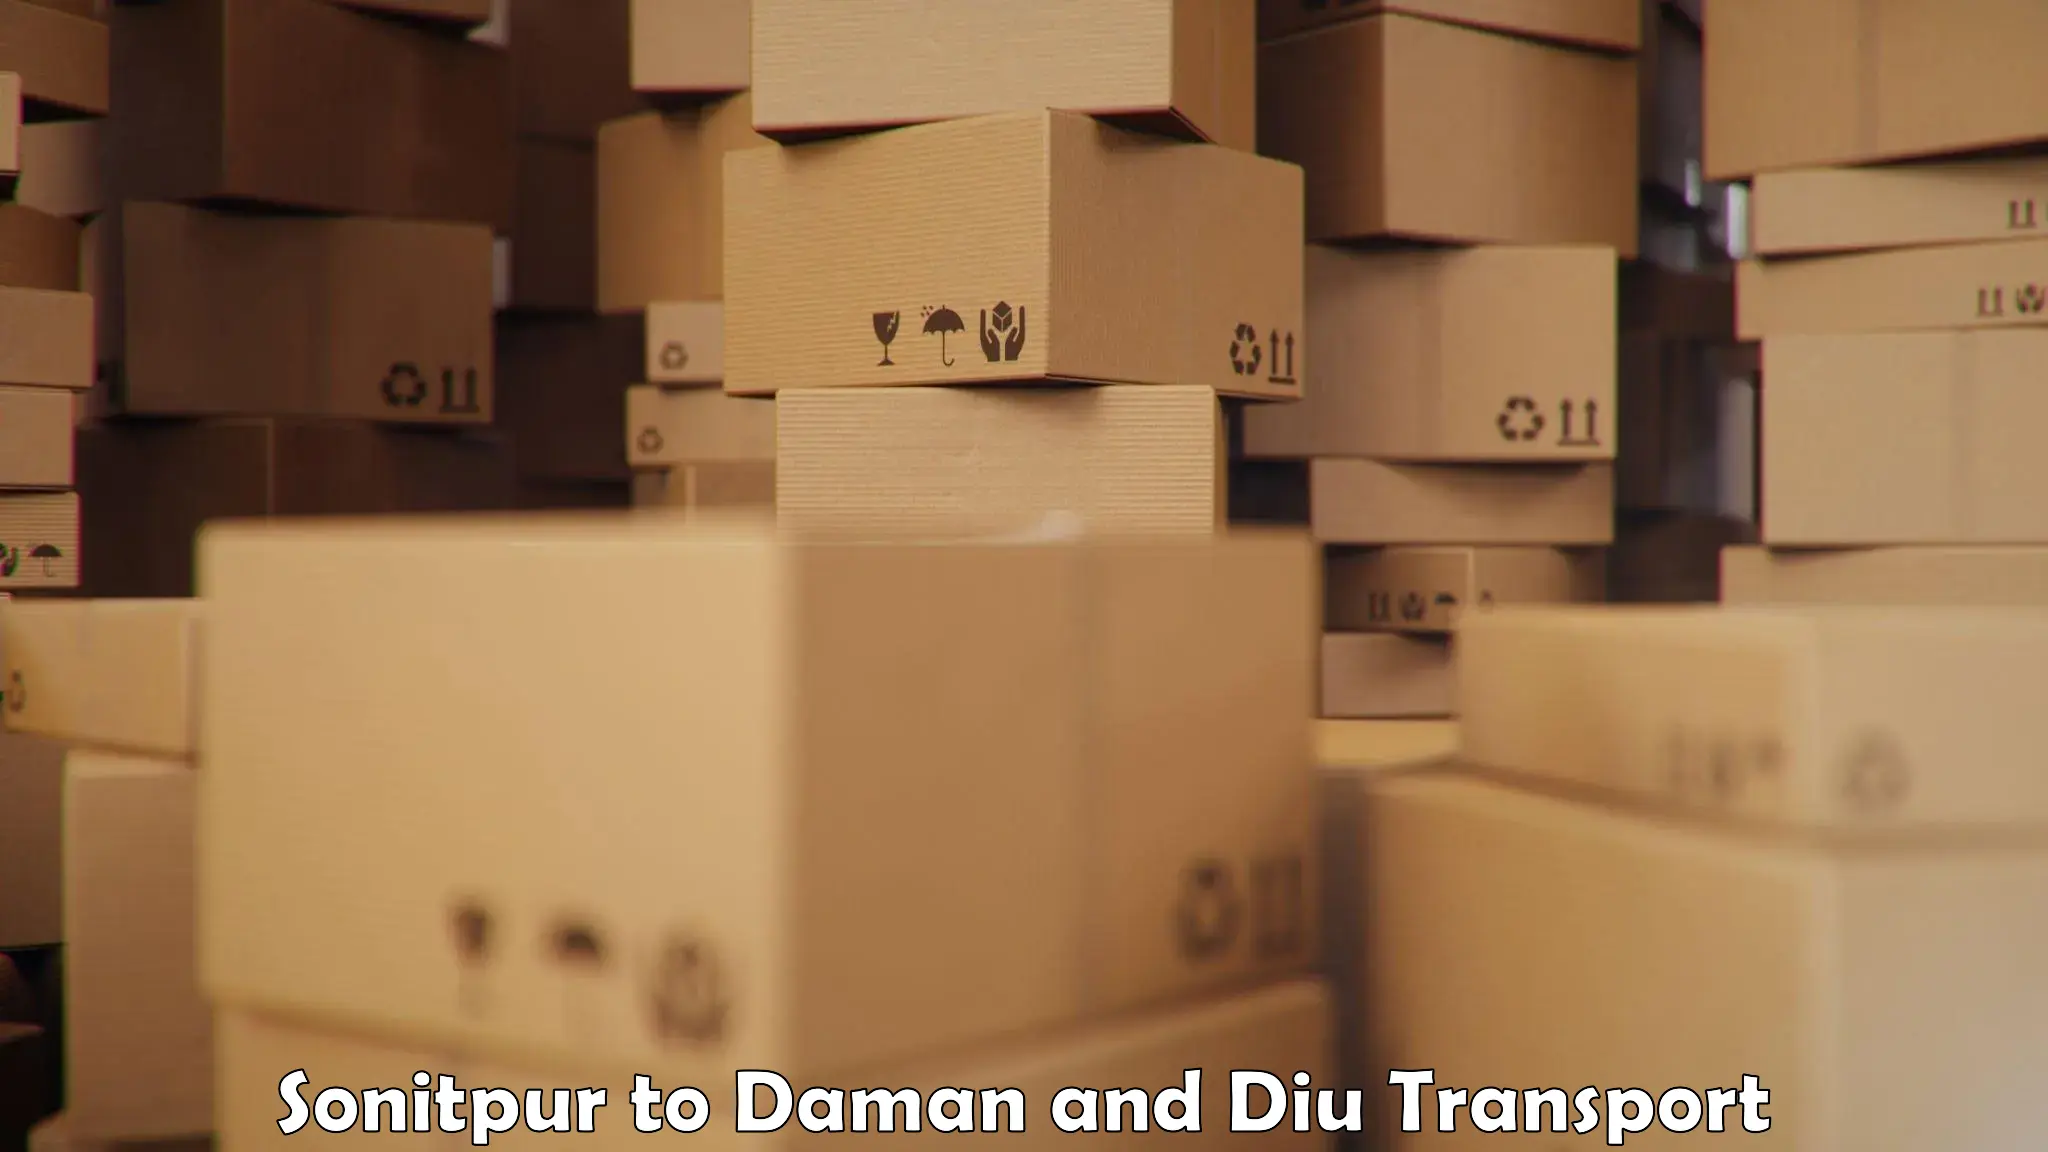 Shipping partner Sonitpur to Diu